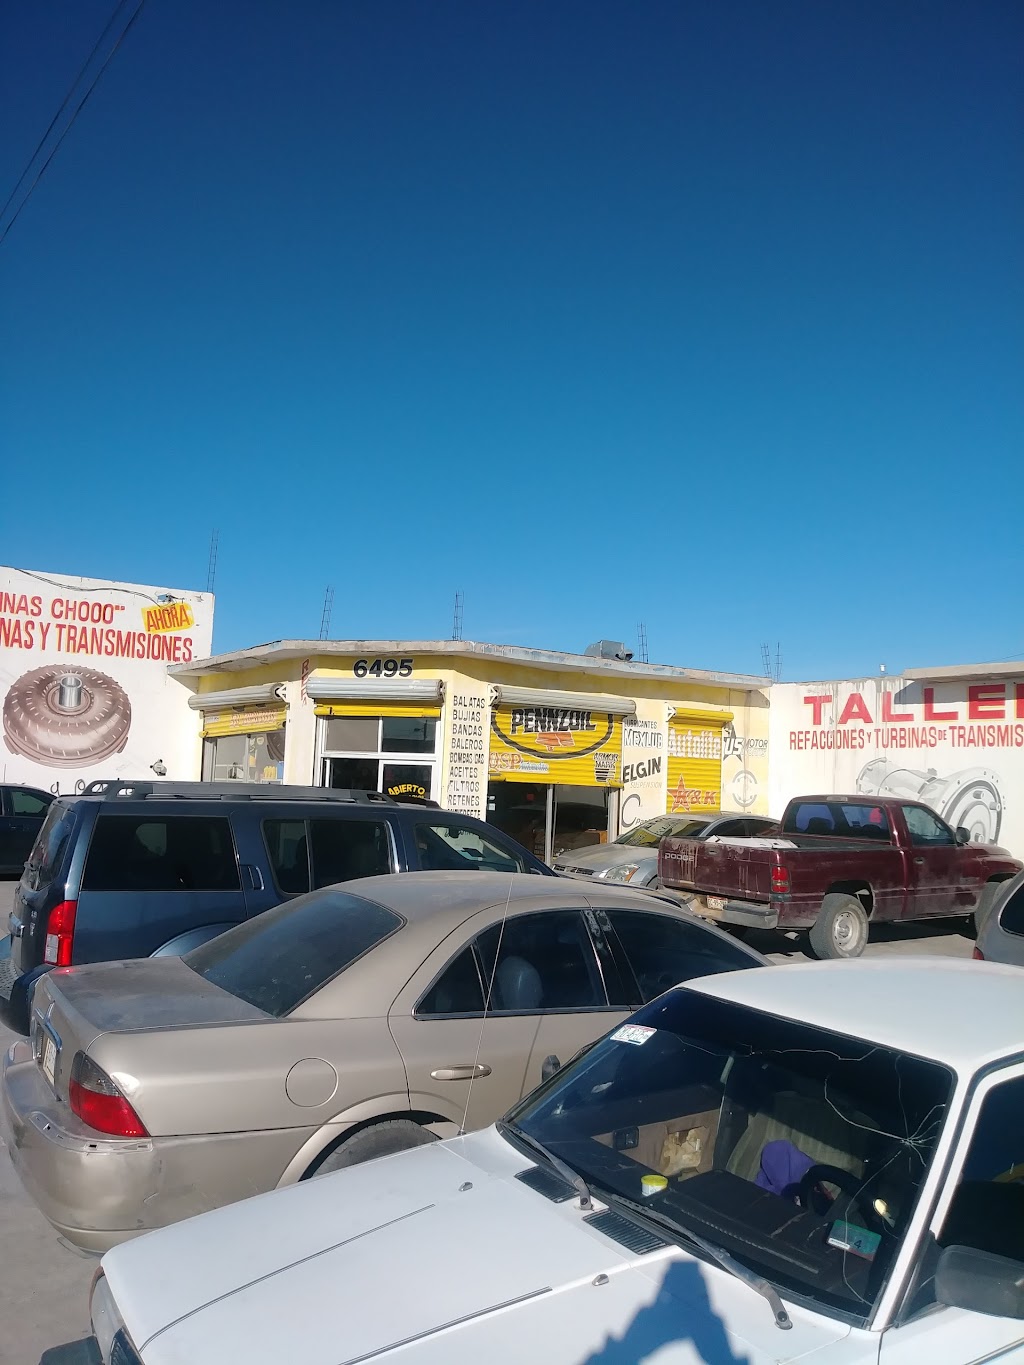 Turbinas Y Transmisiones Santillan | Melón 6495, Granjero, 32690 Cd Juárez, Chih., Mexico | Phone: 656 619 1023